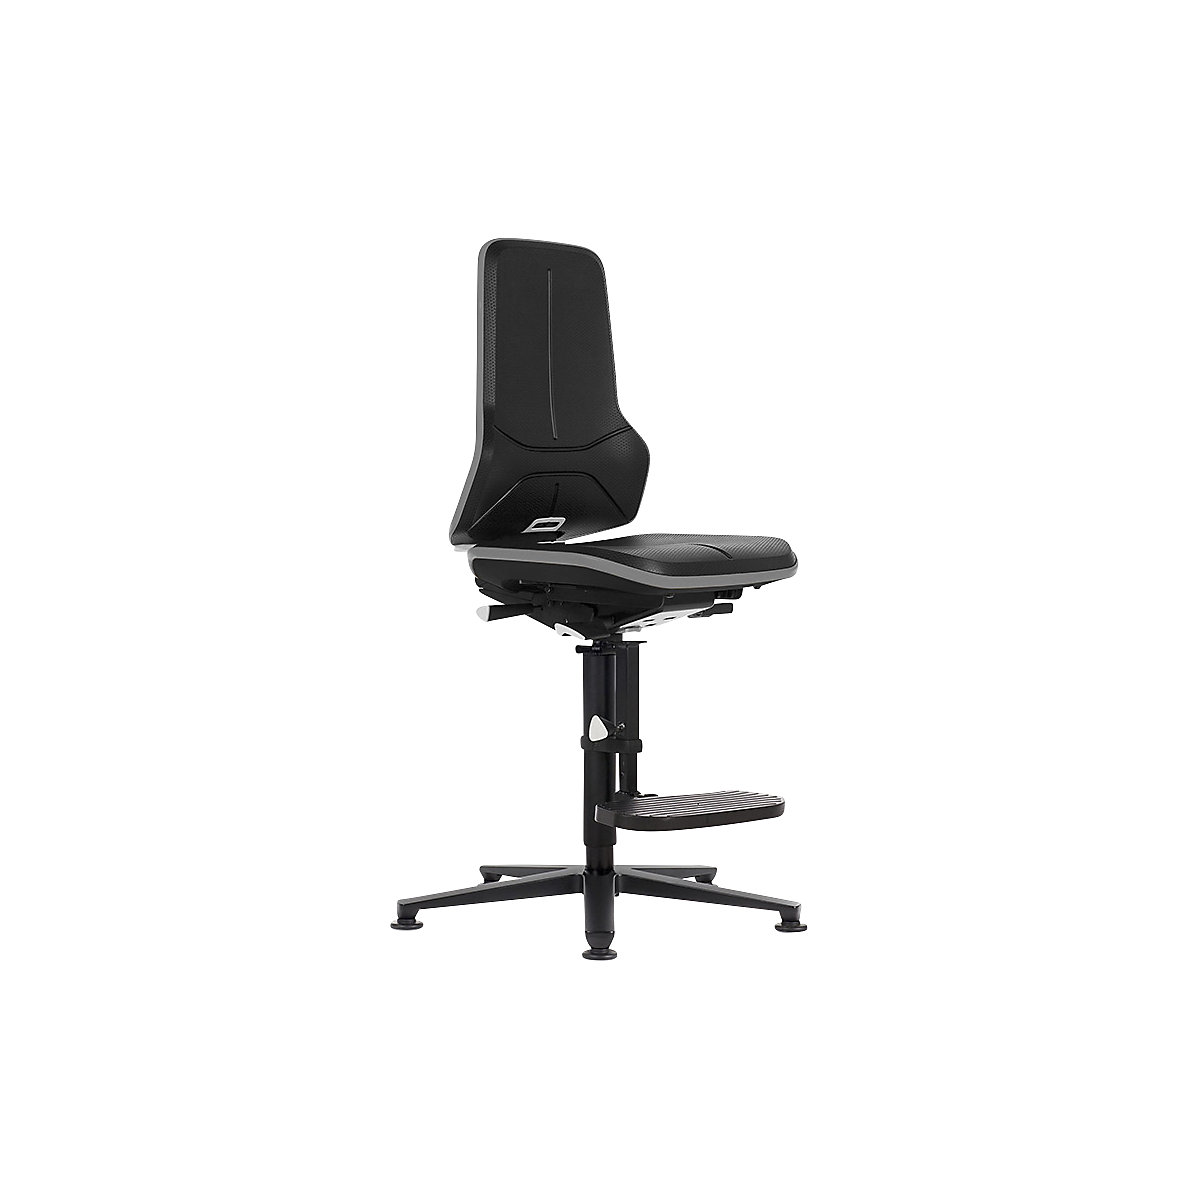 Radna okretna stolica NEON ESD, kliznik, podrška za penjanje – bimos, stalni kontakt, PU pjena, fleksibilna traka u sivoj boji-4